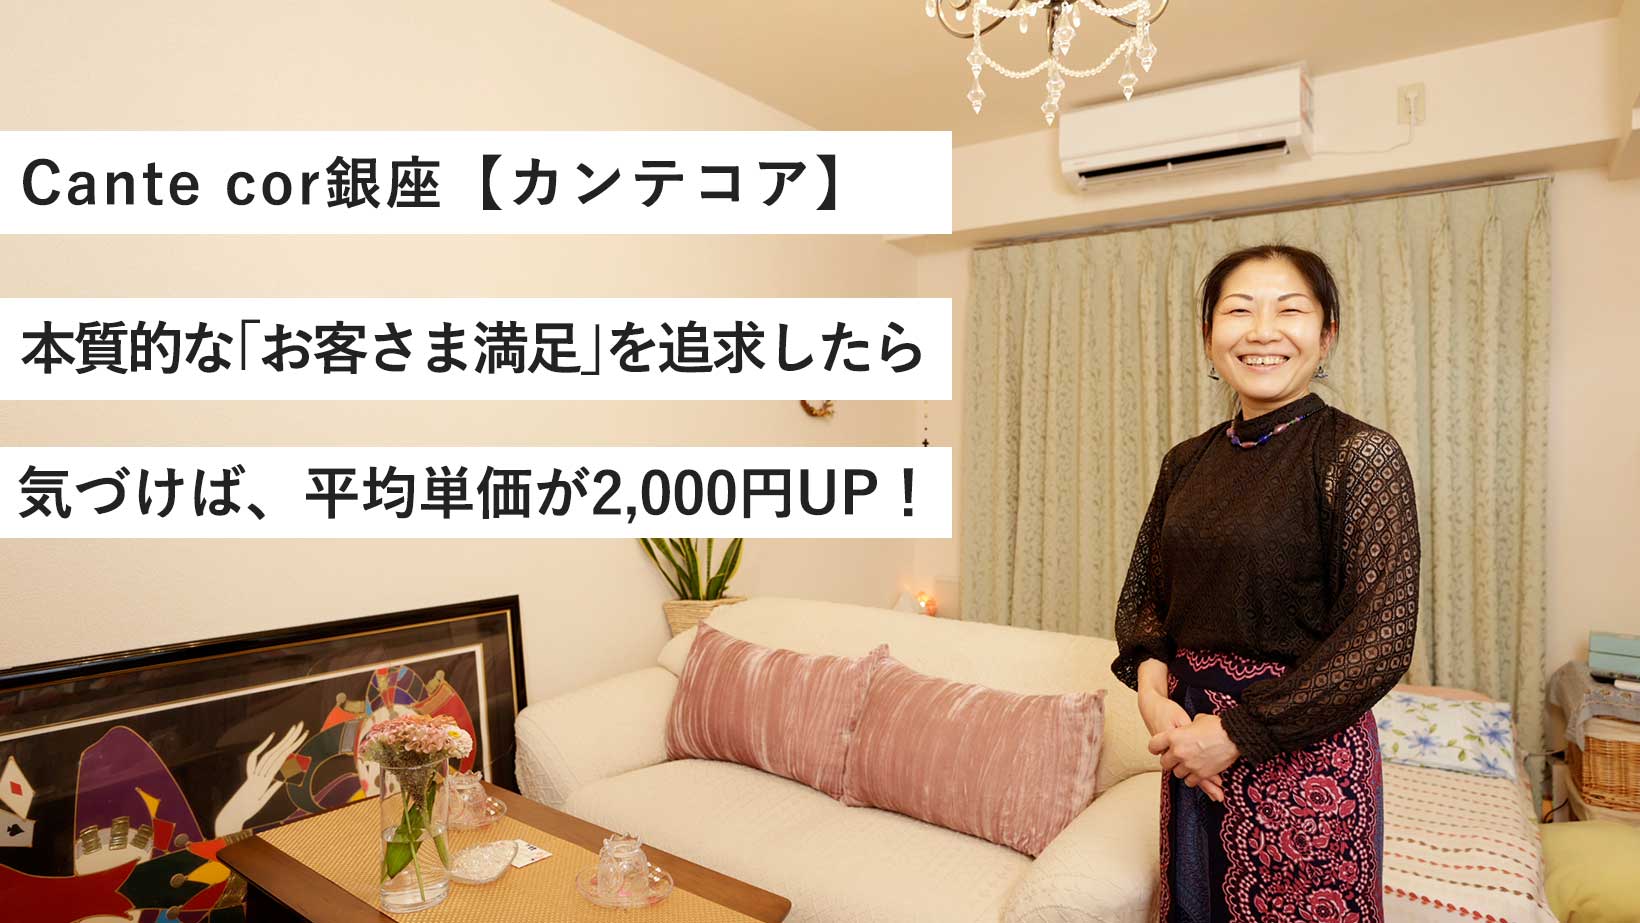 Cante cor銀座／お客さま満足を追求したら、単価2,000円UP！